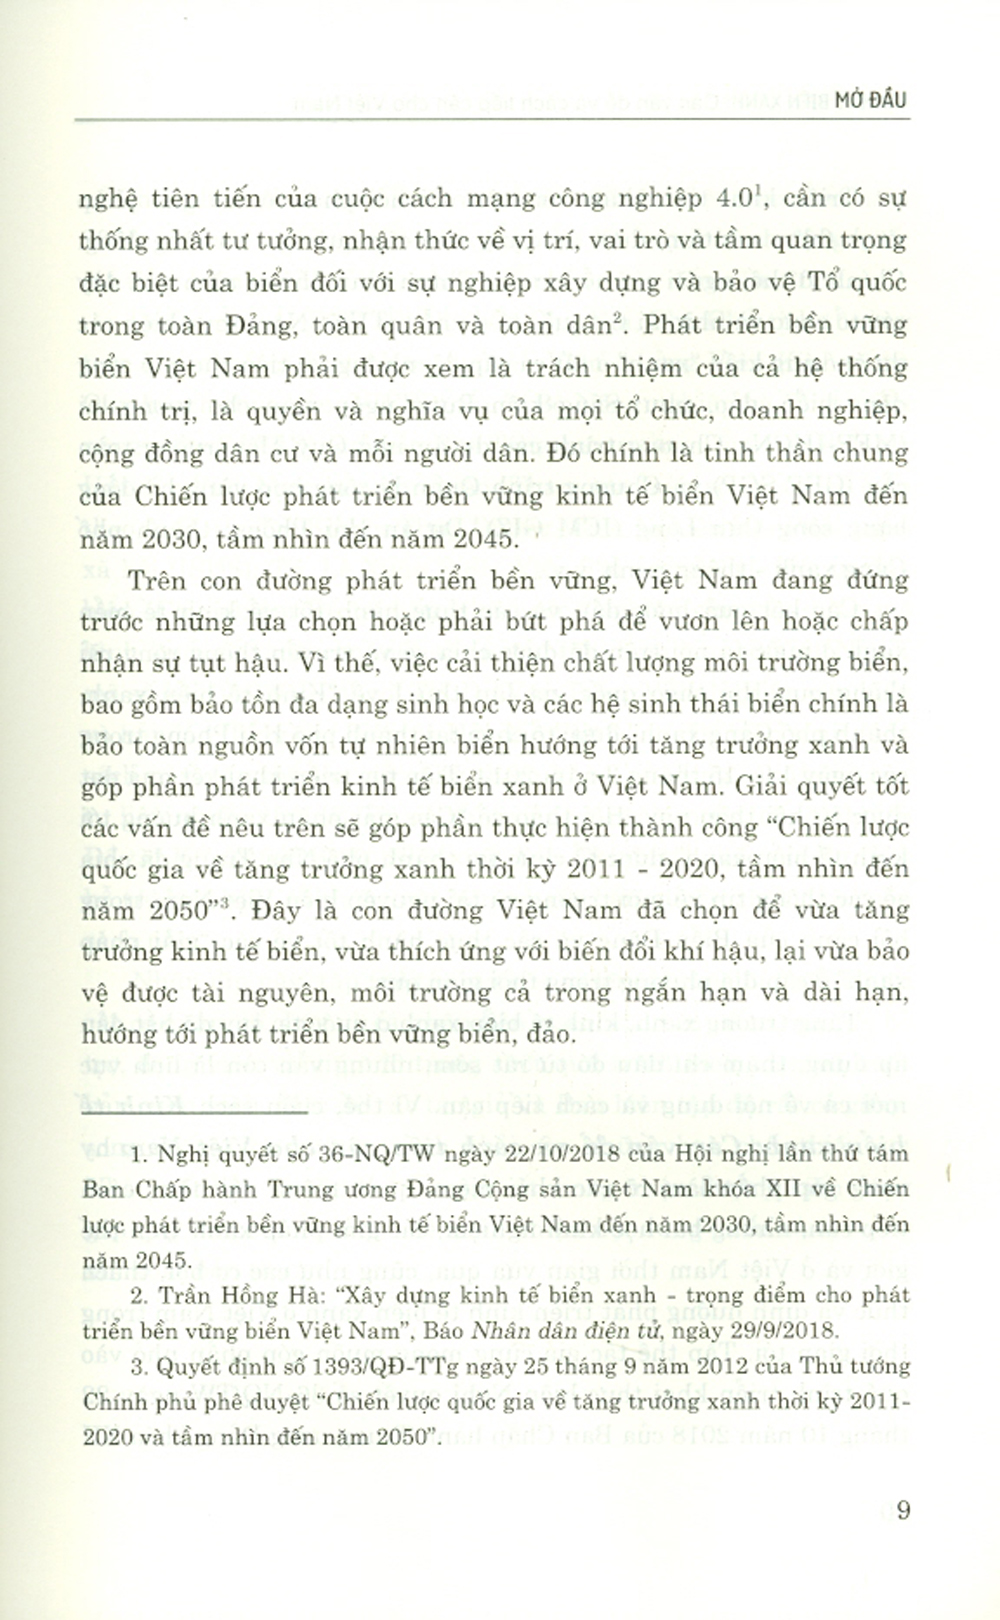 Kinh Tế Biển Xanh Các Vấn Đề Và Cách Tiếp Cận Cho Việt Nam (Sách tham khảo)